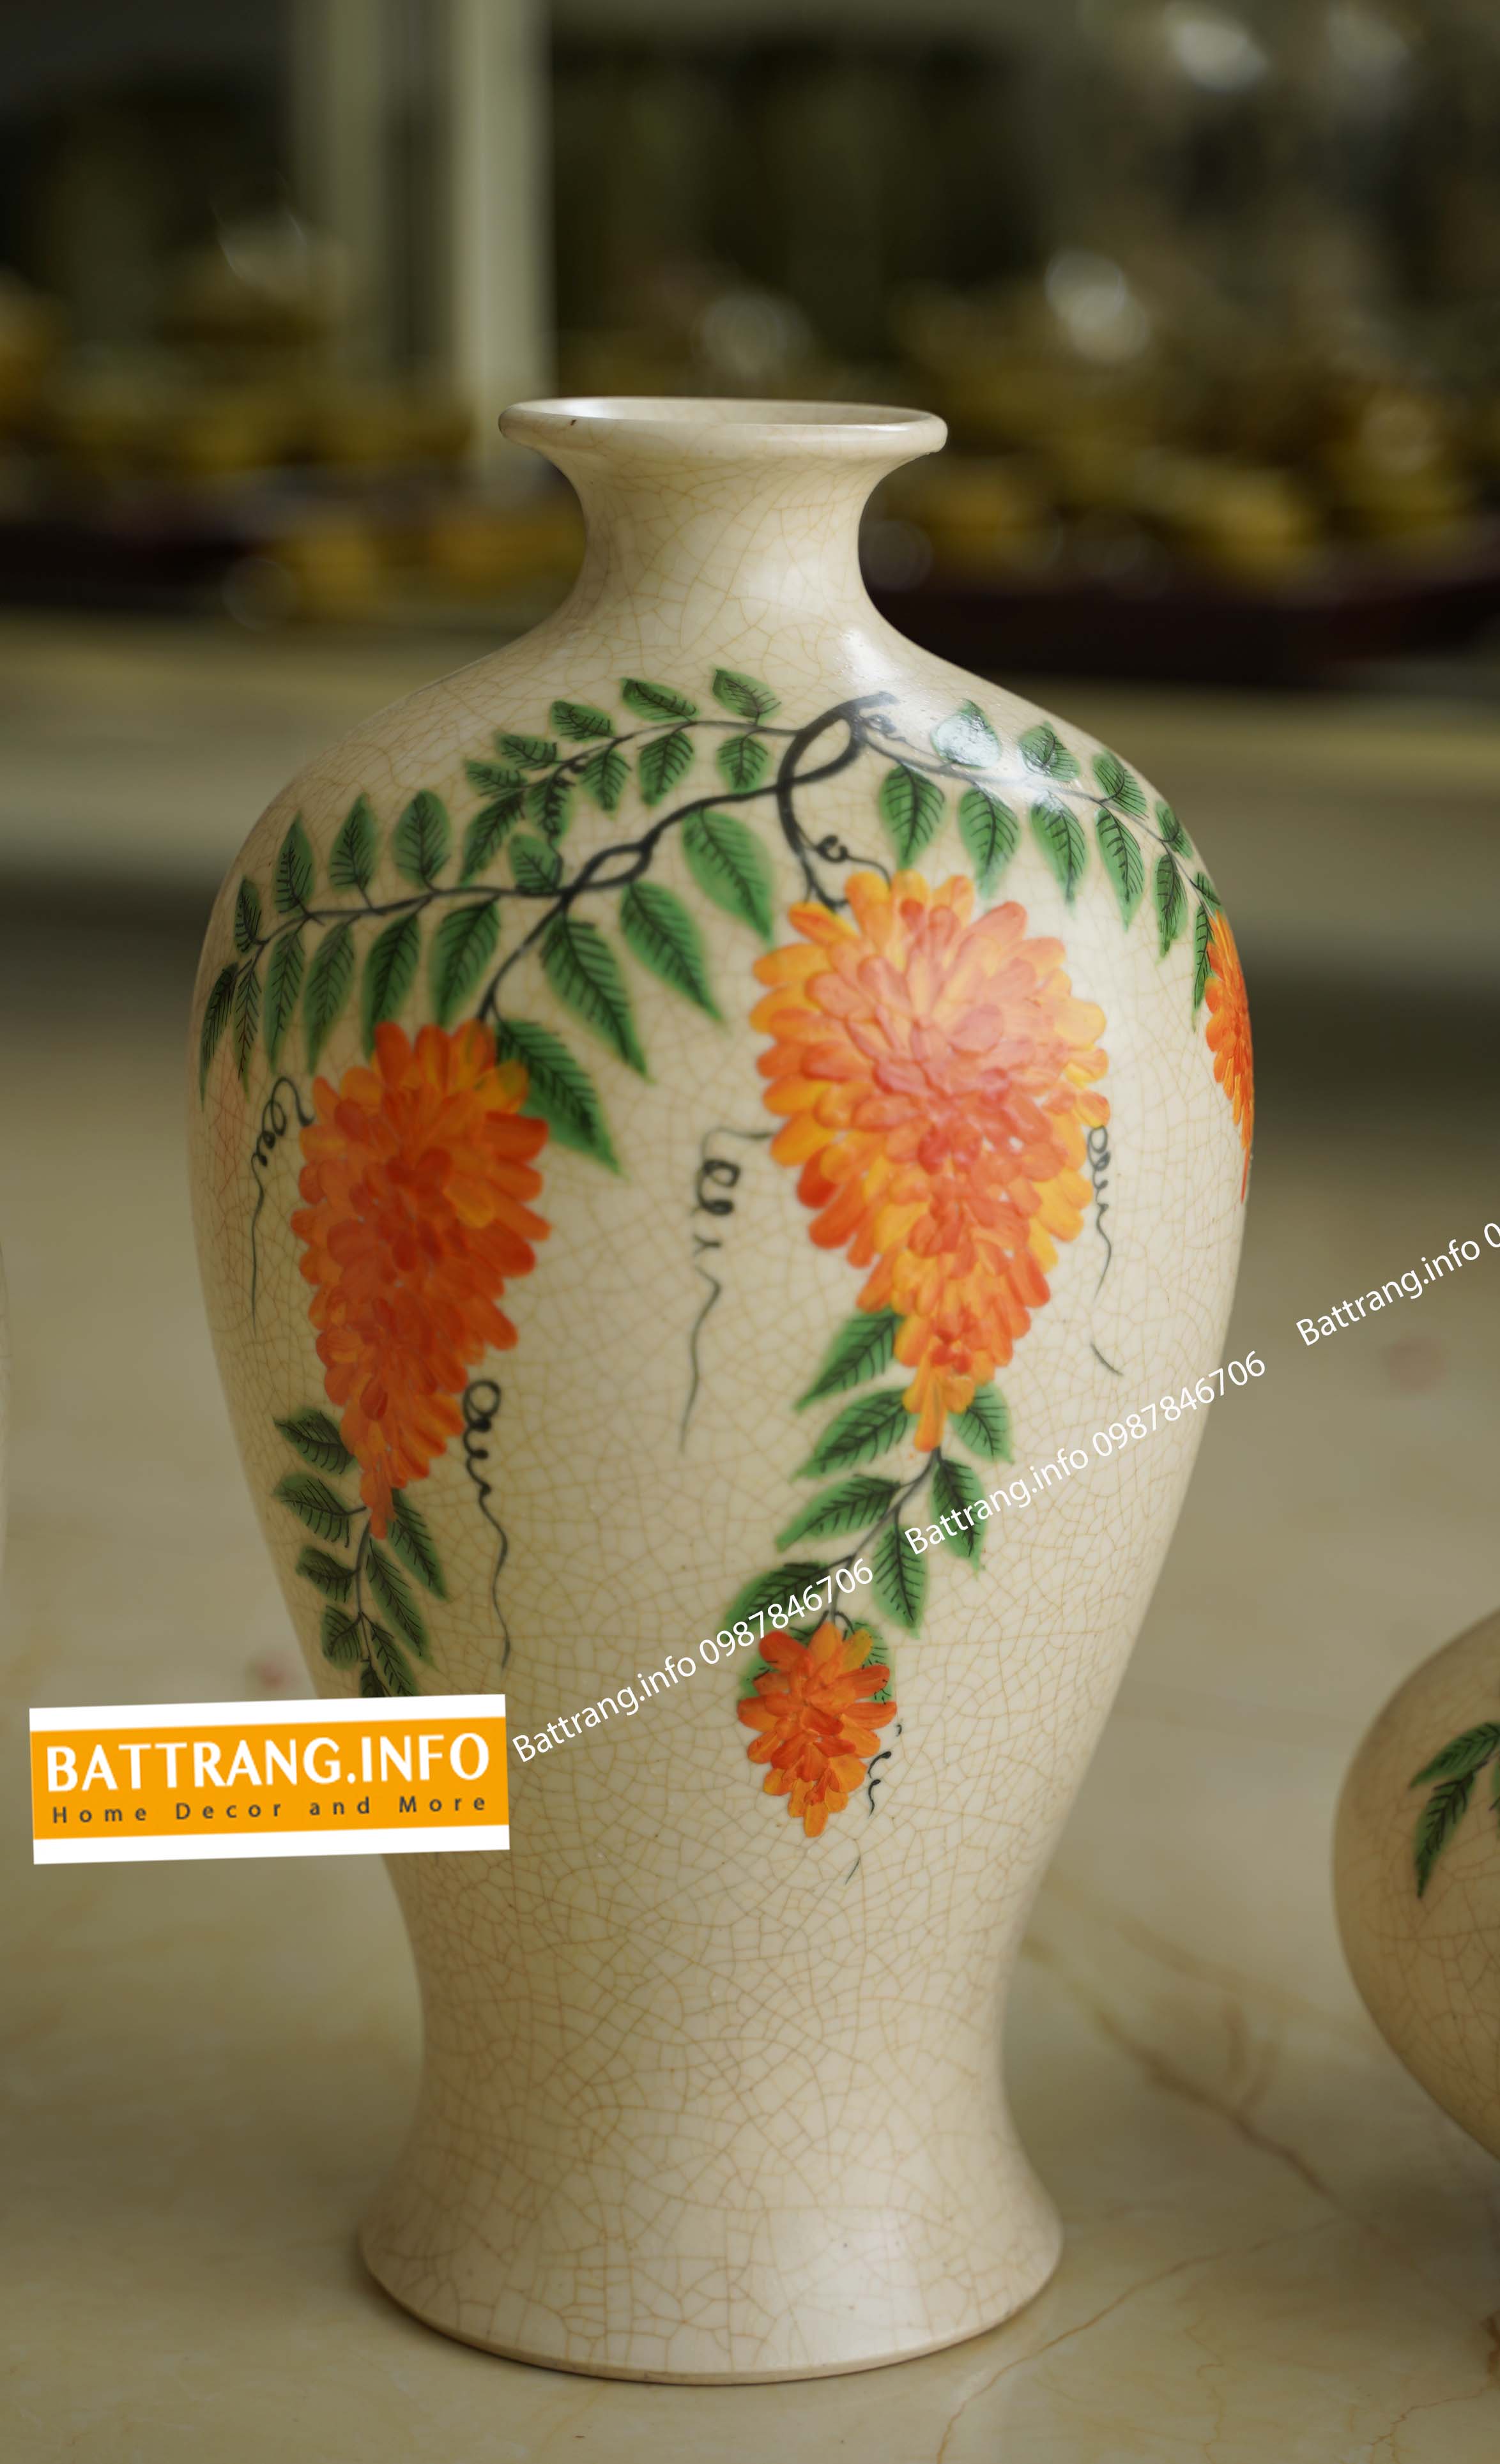 Bát Tràng: Hãy chiêm ngưỡng những bức tranh và đồ gốm tuyệt đẹp được sản xuất tại làng gốm nổi tiếng Bát Tràng. Các nghệ nhân tại đây đã tạo ra những tác phẩm nghệ thuật độc đáo với các họa tiết và màu sắc tinh tế. Hãy khám phá một phần văn hóa truyền thống của Việt Nam thông qua những sản phẩm từ Bát Tràng.